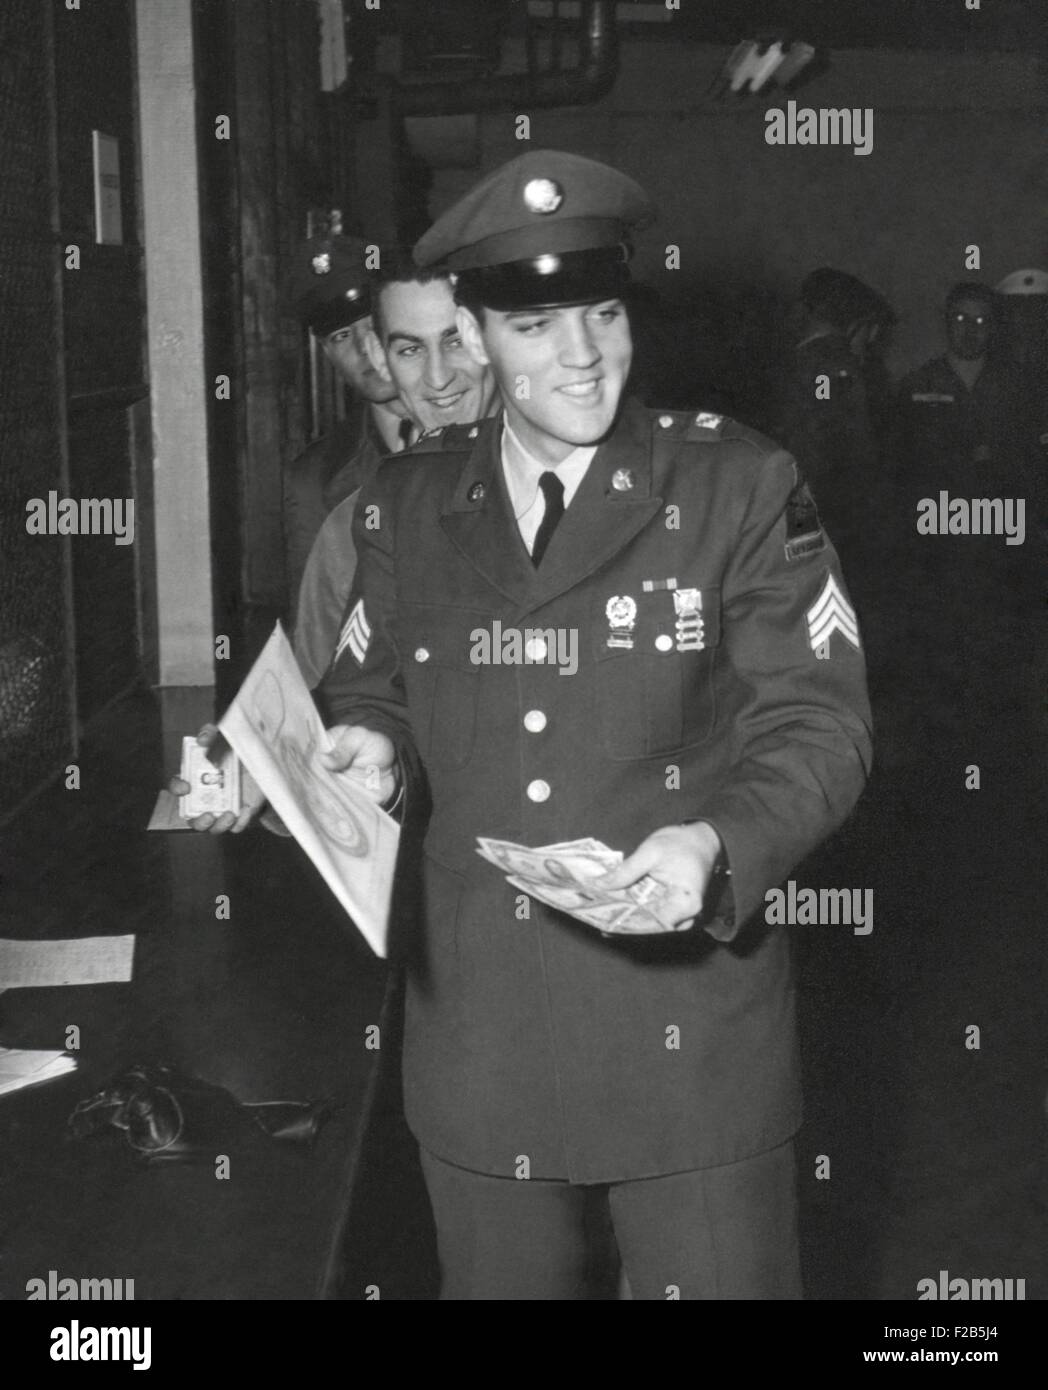 Sgt. A. Elvis Presley, XXXII blindata, 3° Armored Div. riscuote il suo ultimo pagare come egli ri-entra nella vita civile. Il 5 marzo 1960. - (BSLOC 2014 17 108) Foto Stock